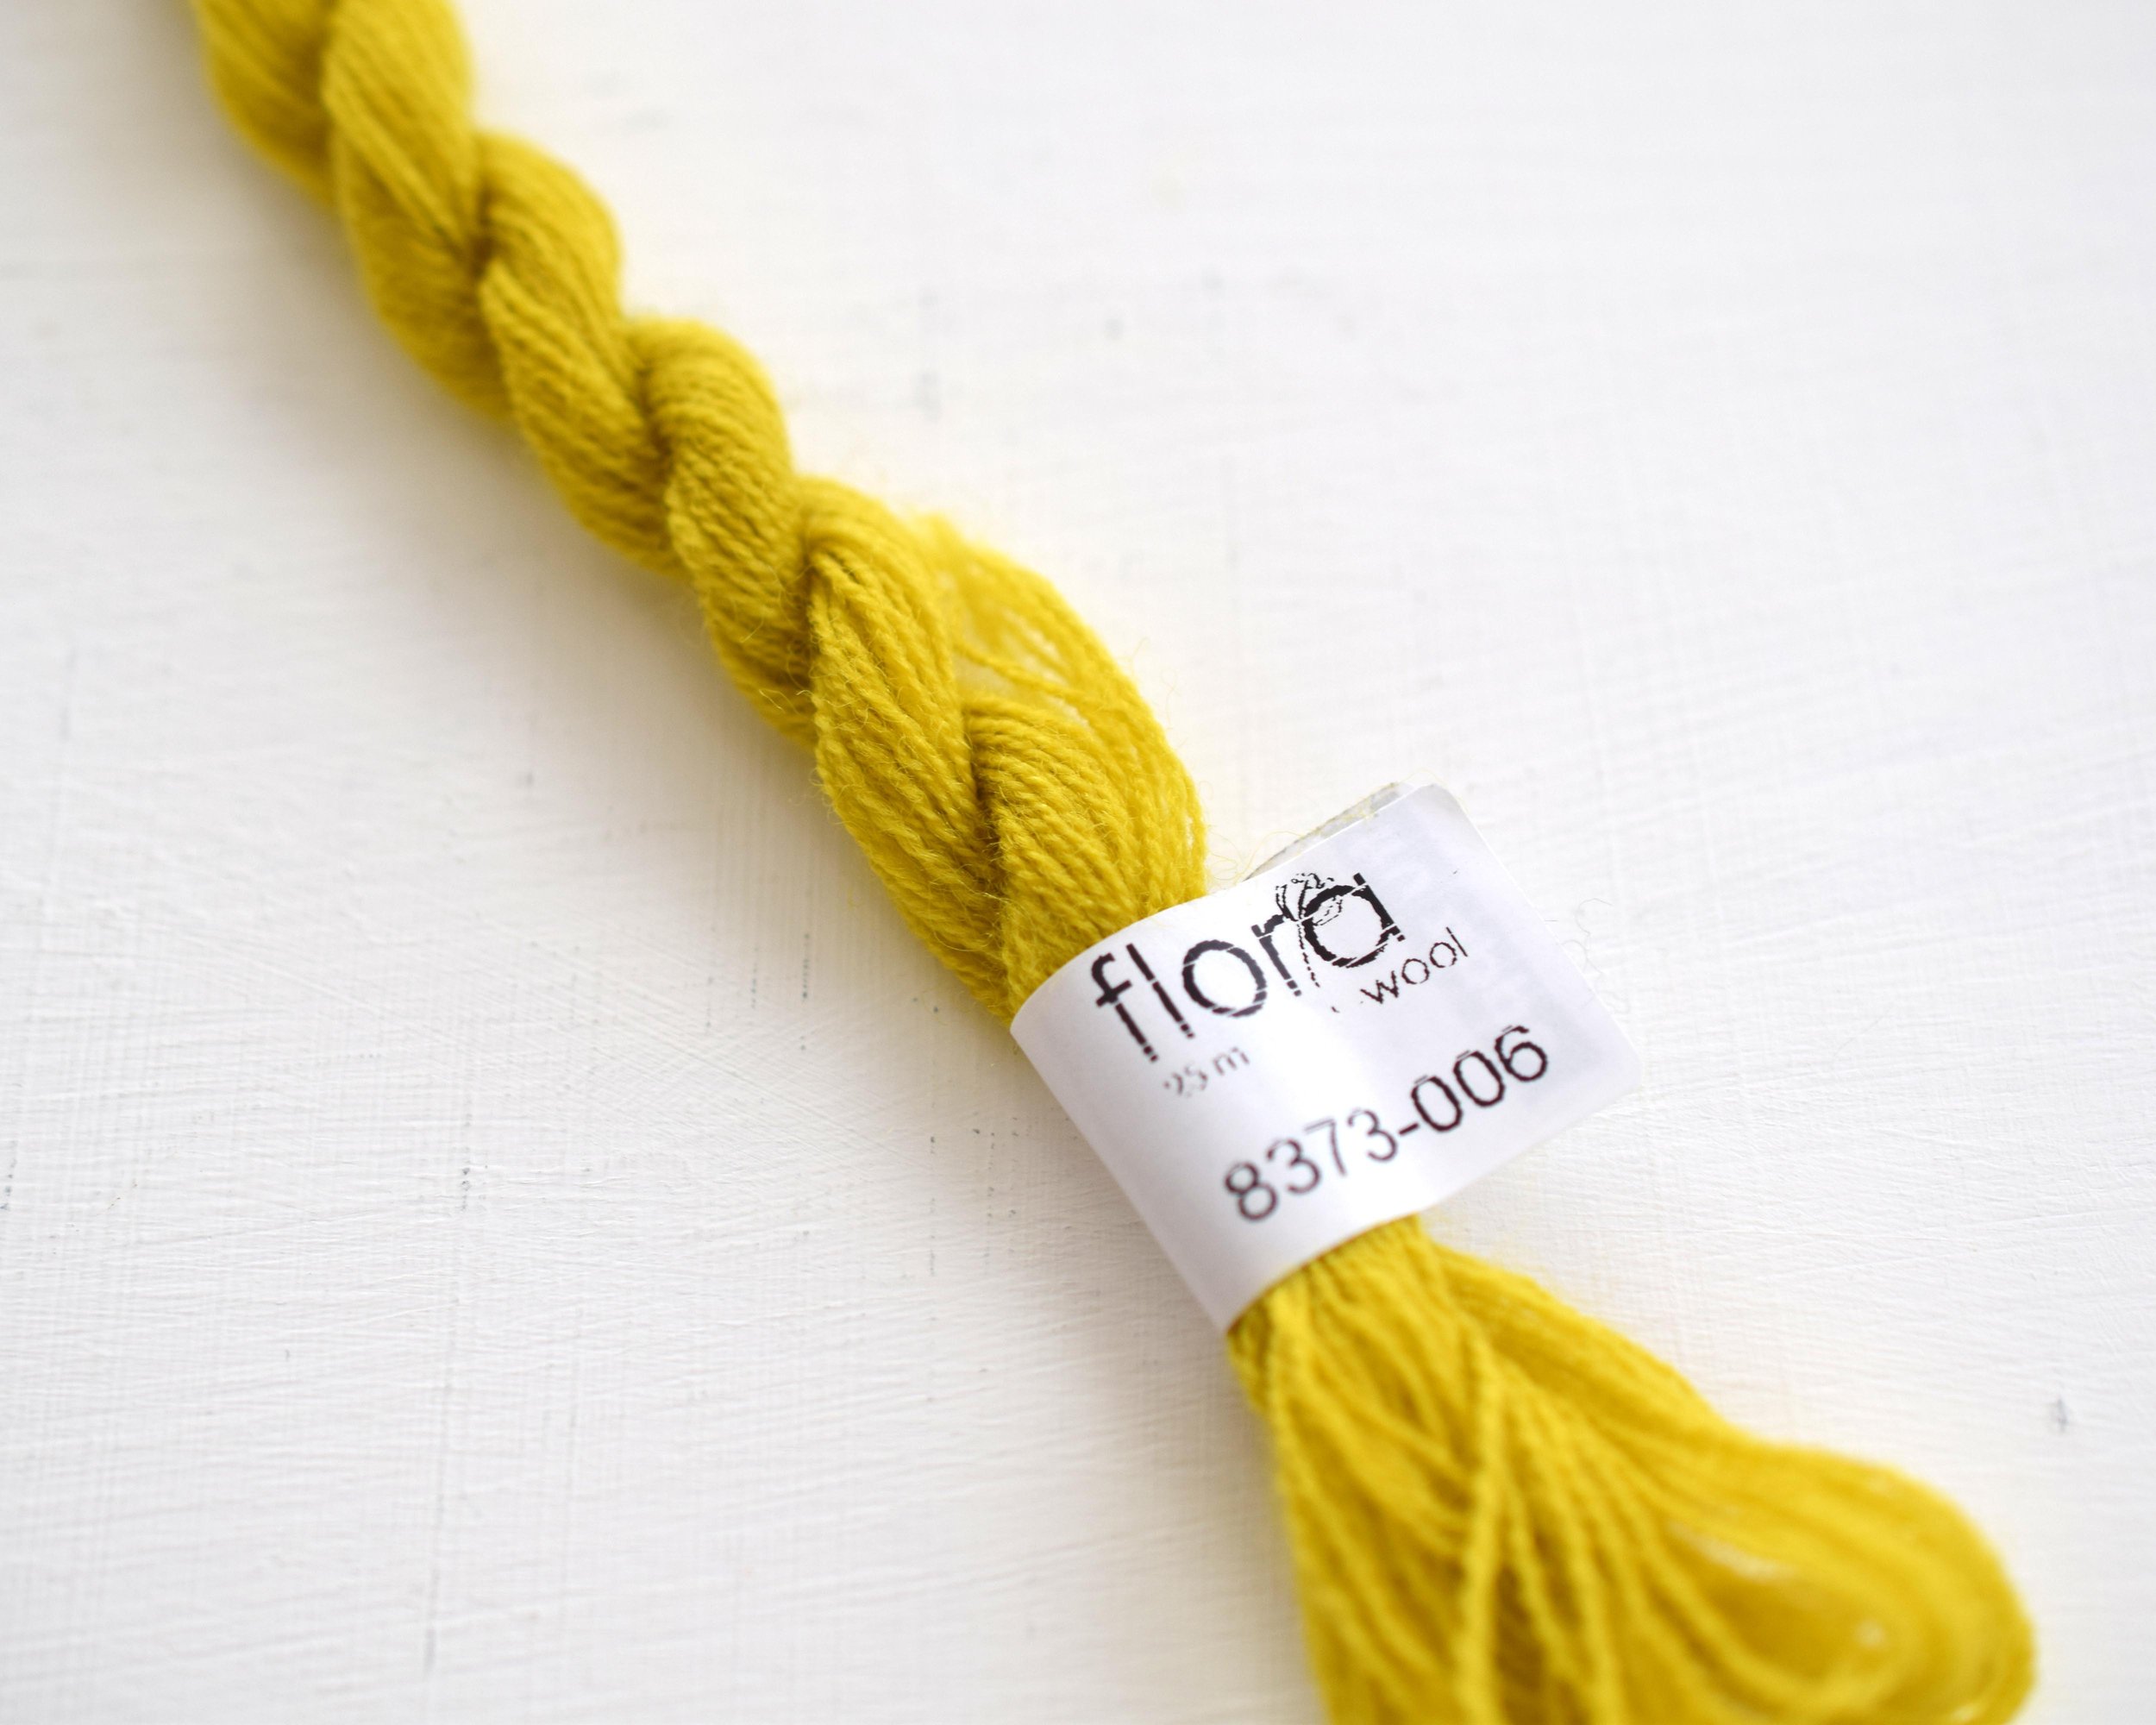 ウール刺繍糸&lt;br&gt;¥298 